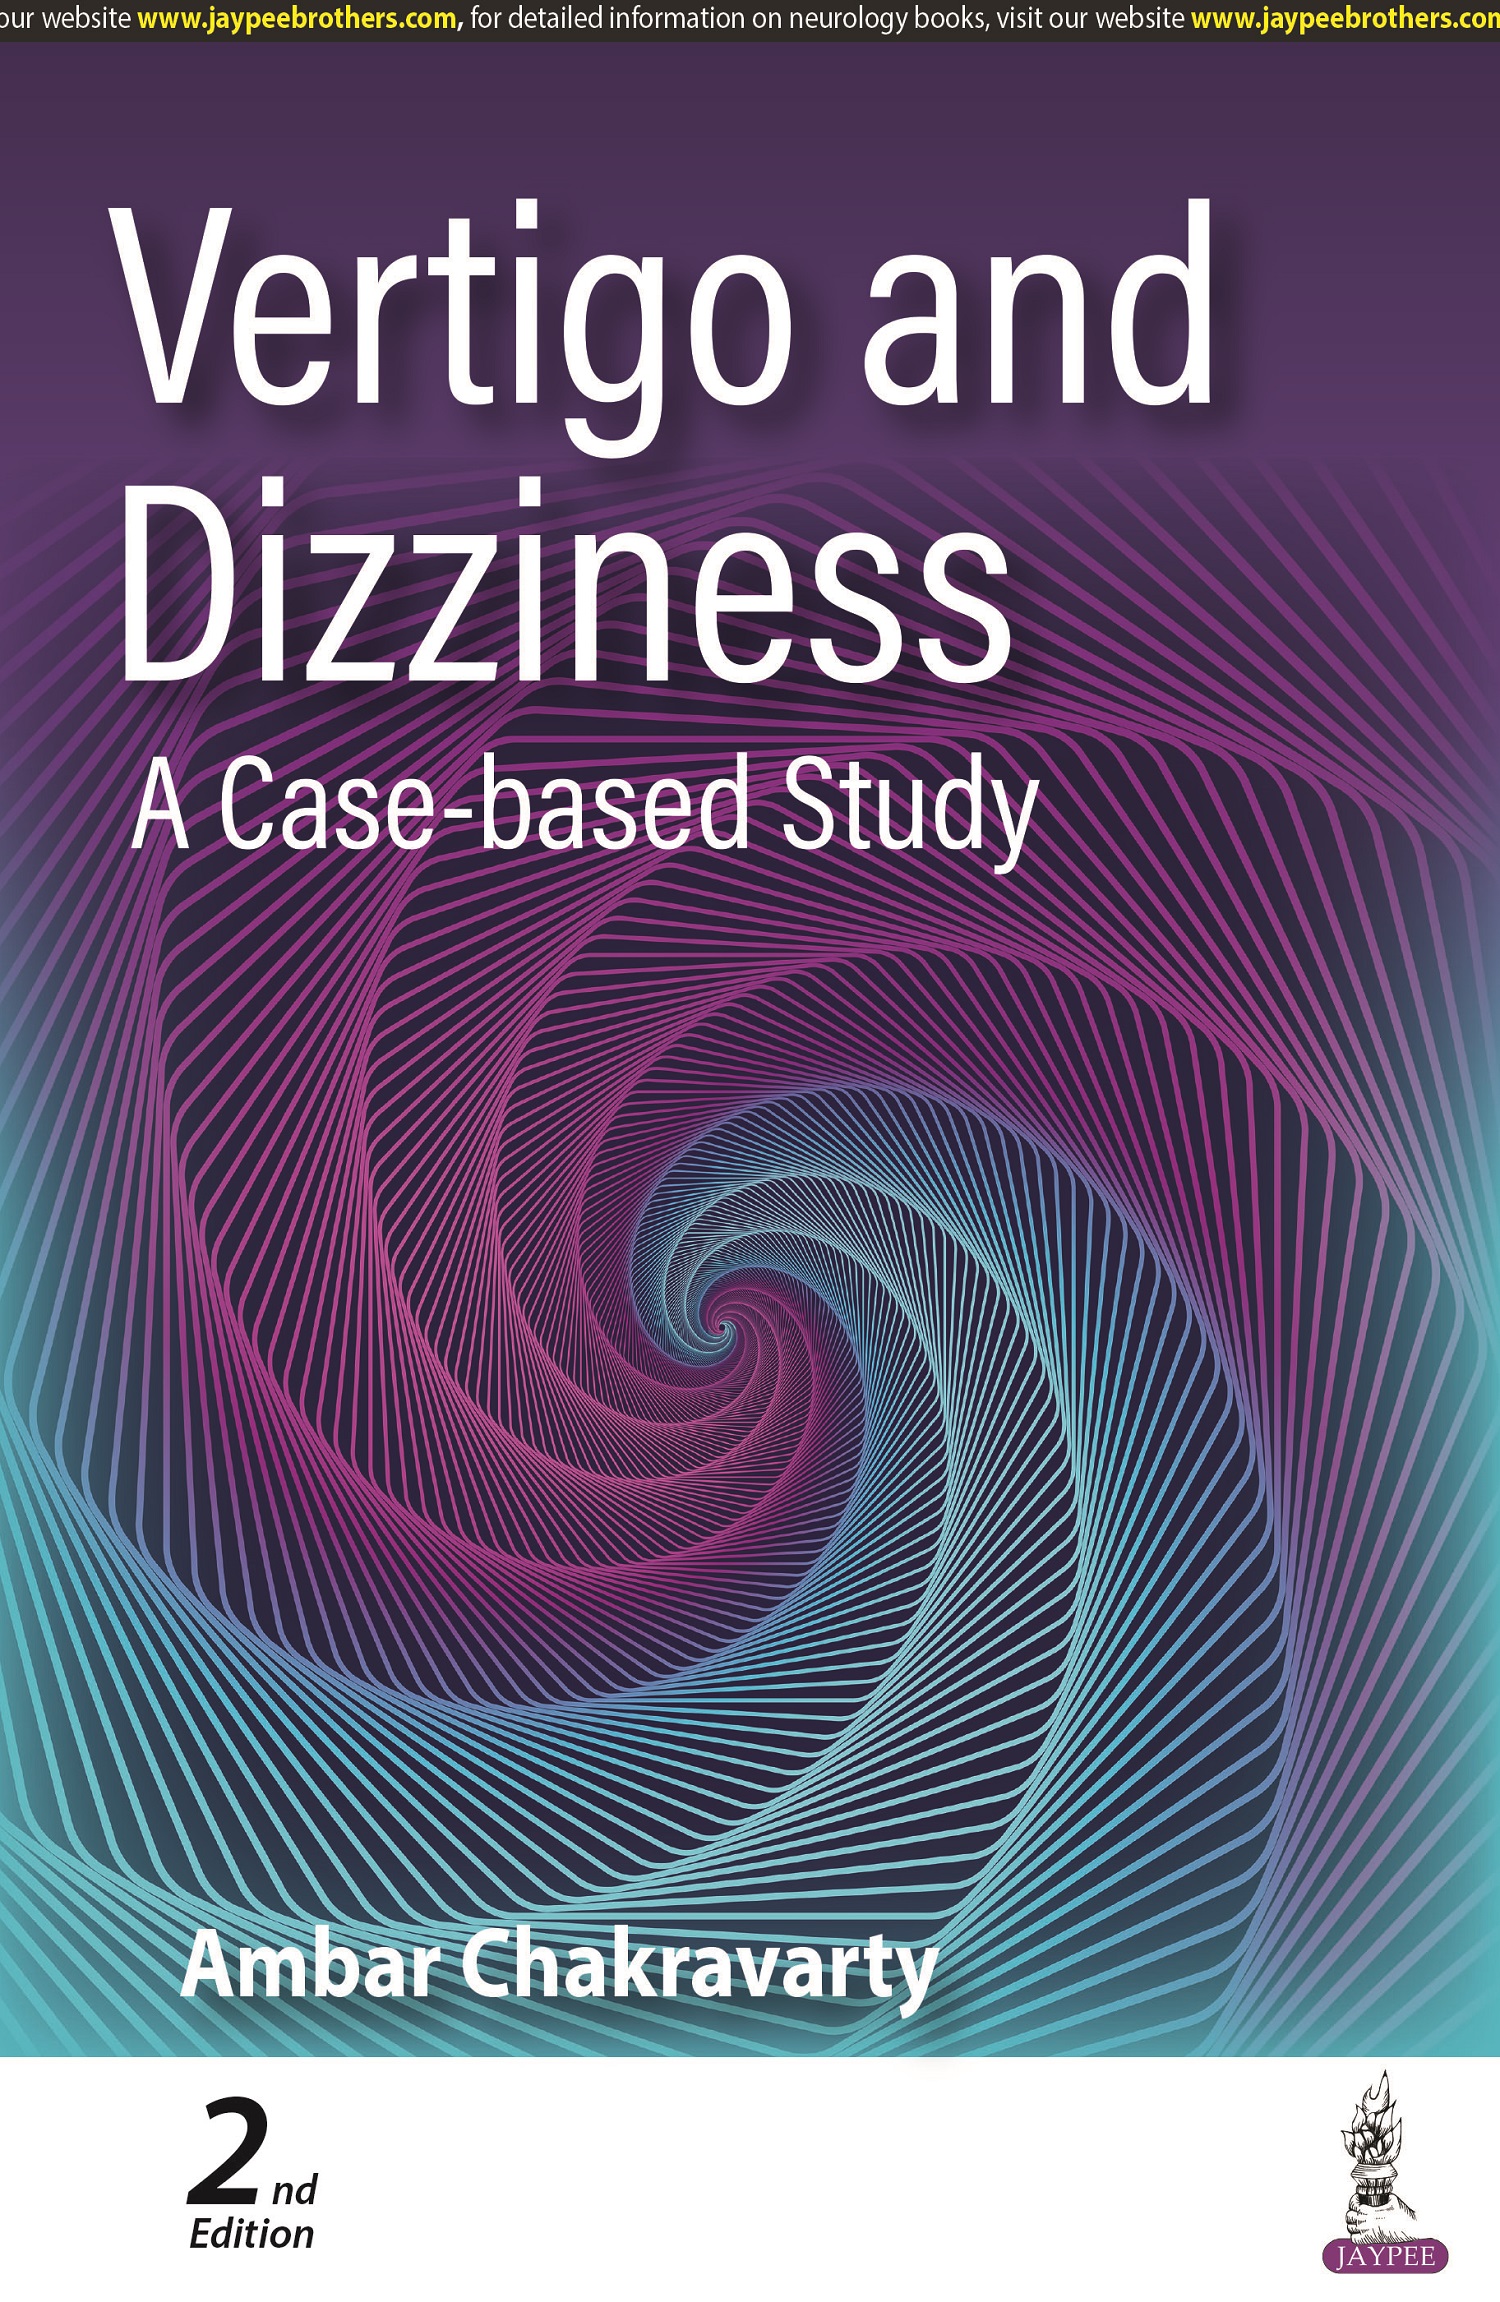 Vertigo and Dizziness: A Case-based Study